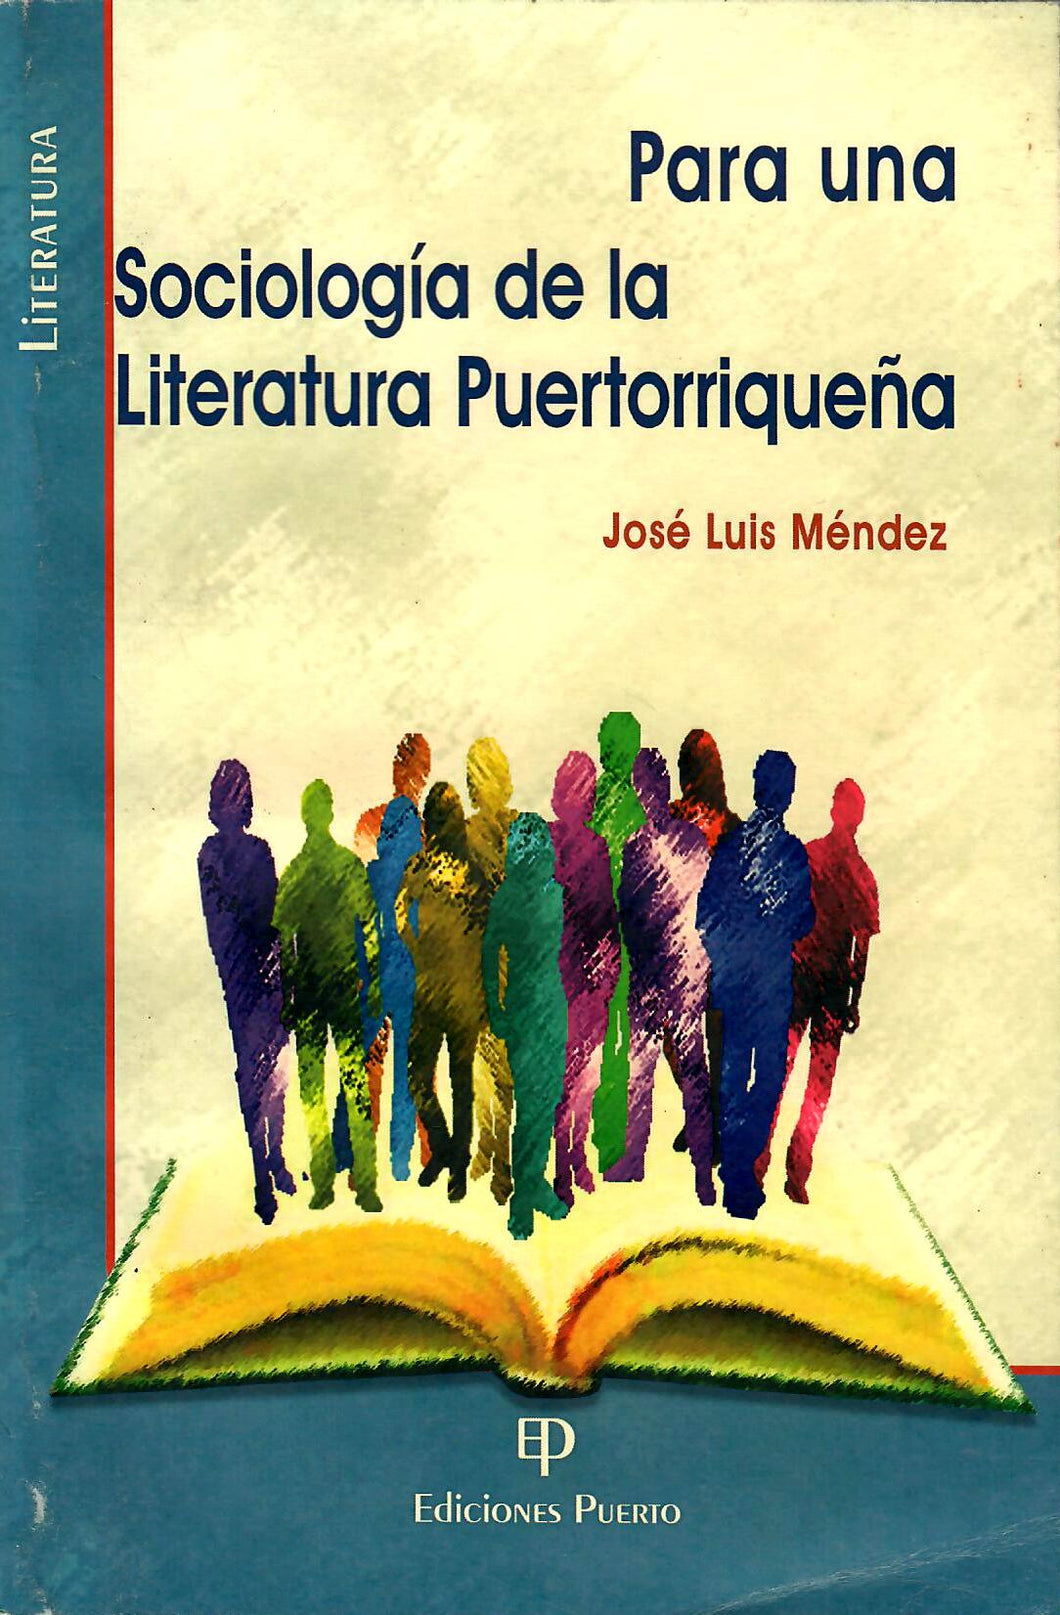 PARA UNA SOCIOLOGÍA DE LA LITERATURA PUERTORRIQUEÑA - José Luis Méndez